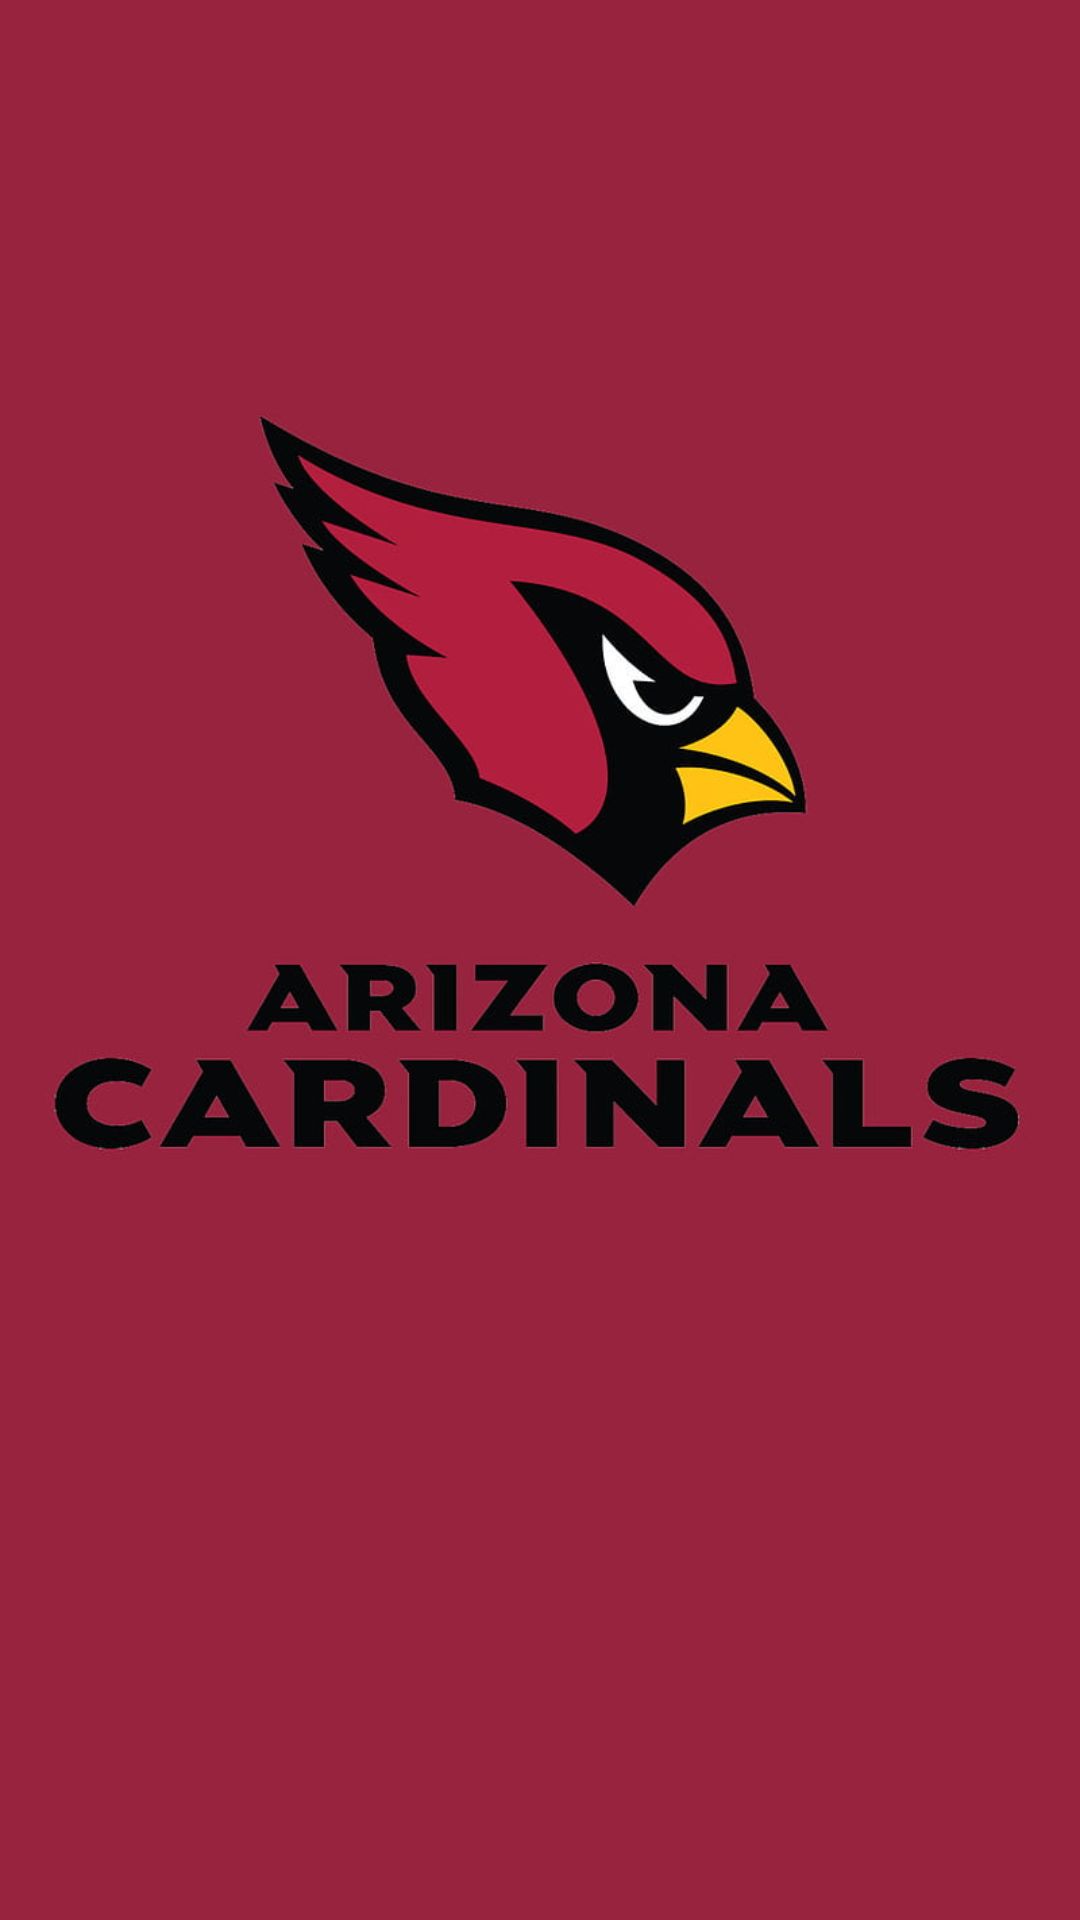 Arizona Cardinals Logo Images